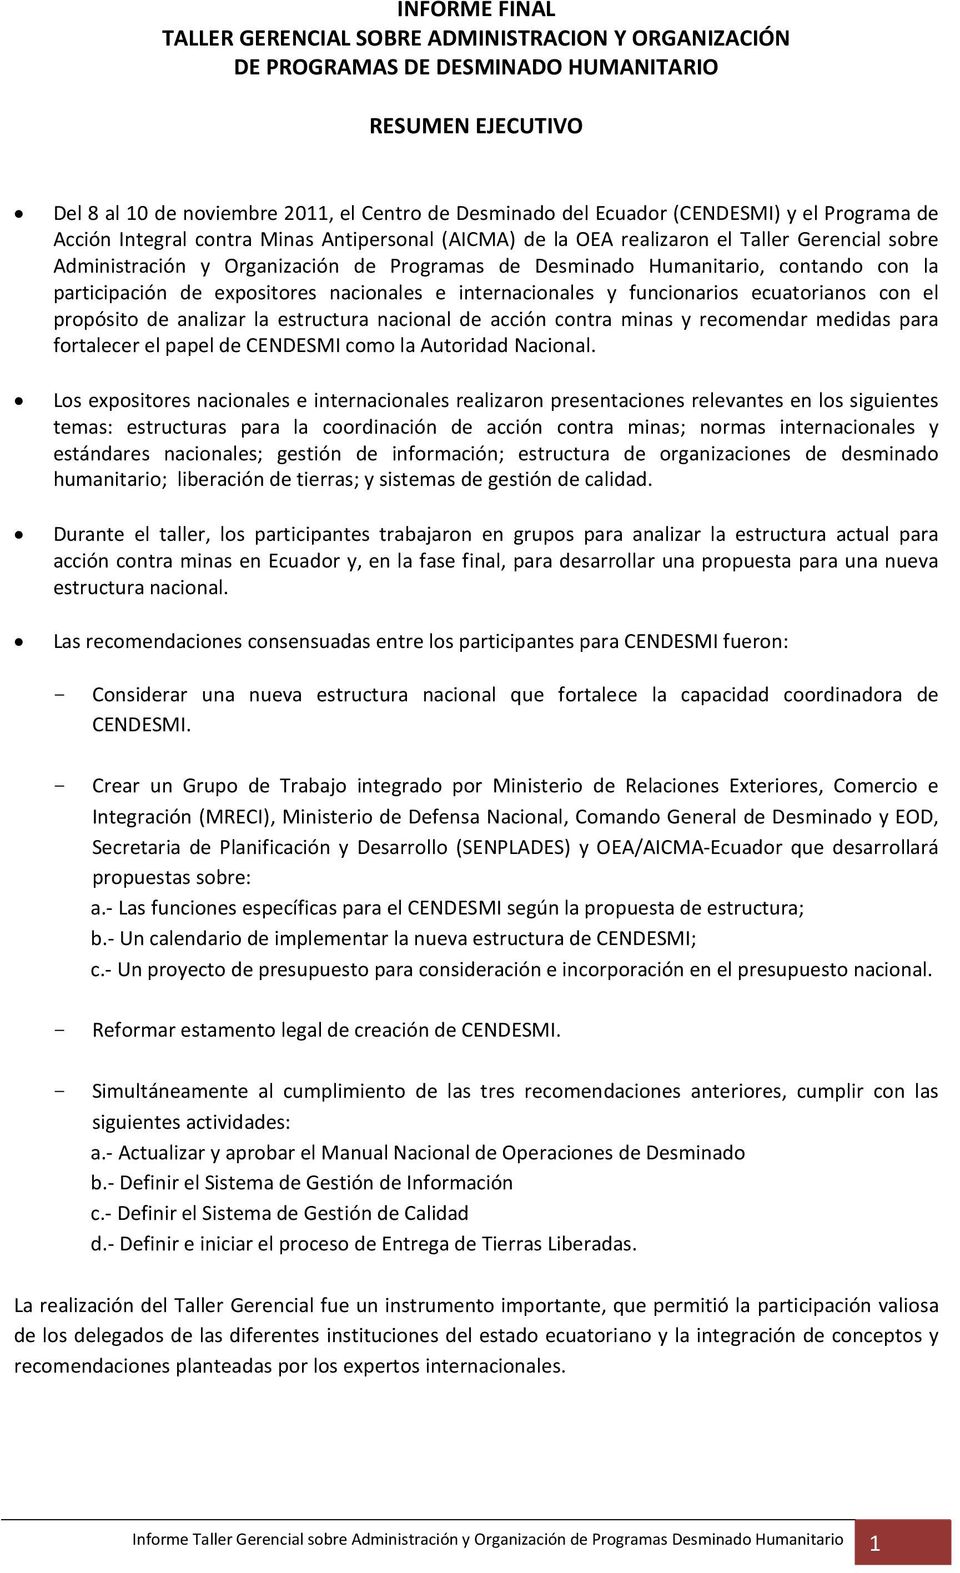 participación de expositores nacionales e internacionales y funcionarios ecuatorianos con el propósito de analizar la estructura nacional de acción contra minas y recomendar medidas para fortalecer